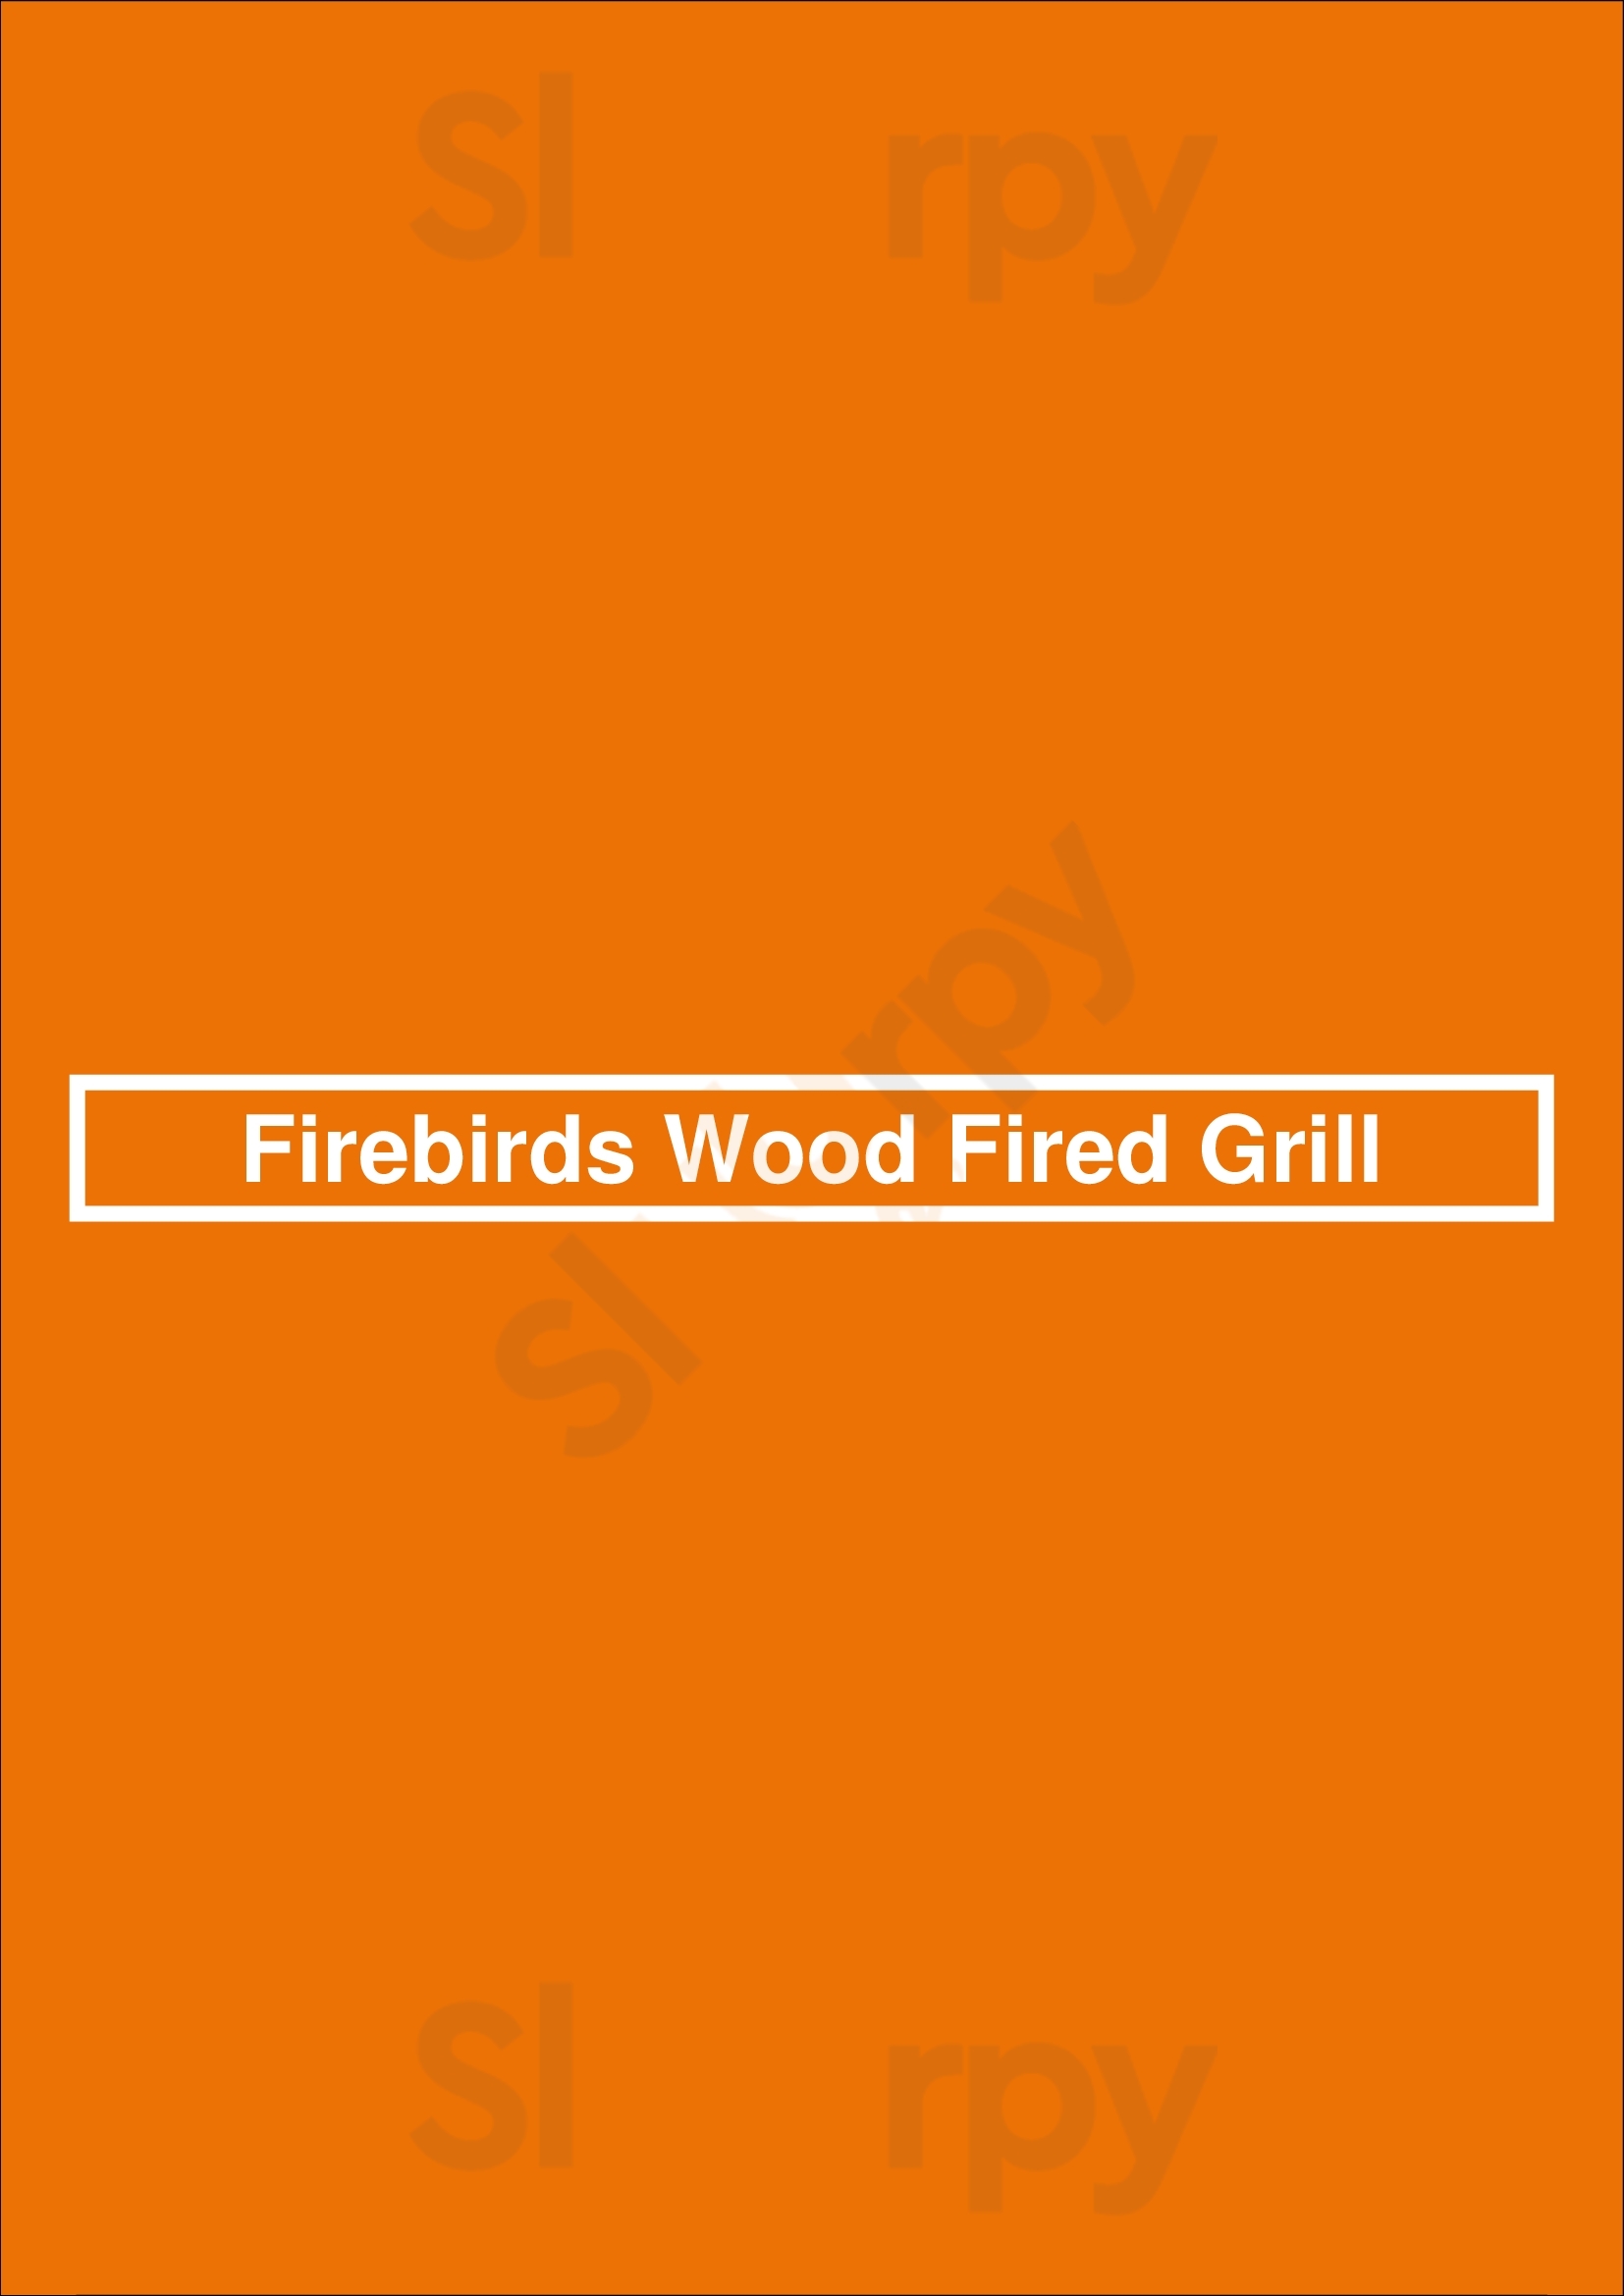 Firebirds Wood Fired Grill Gaithersburg Menu - 1